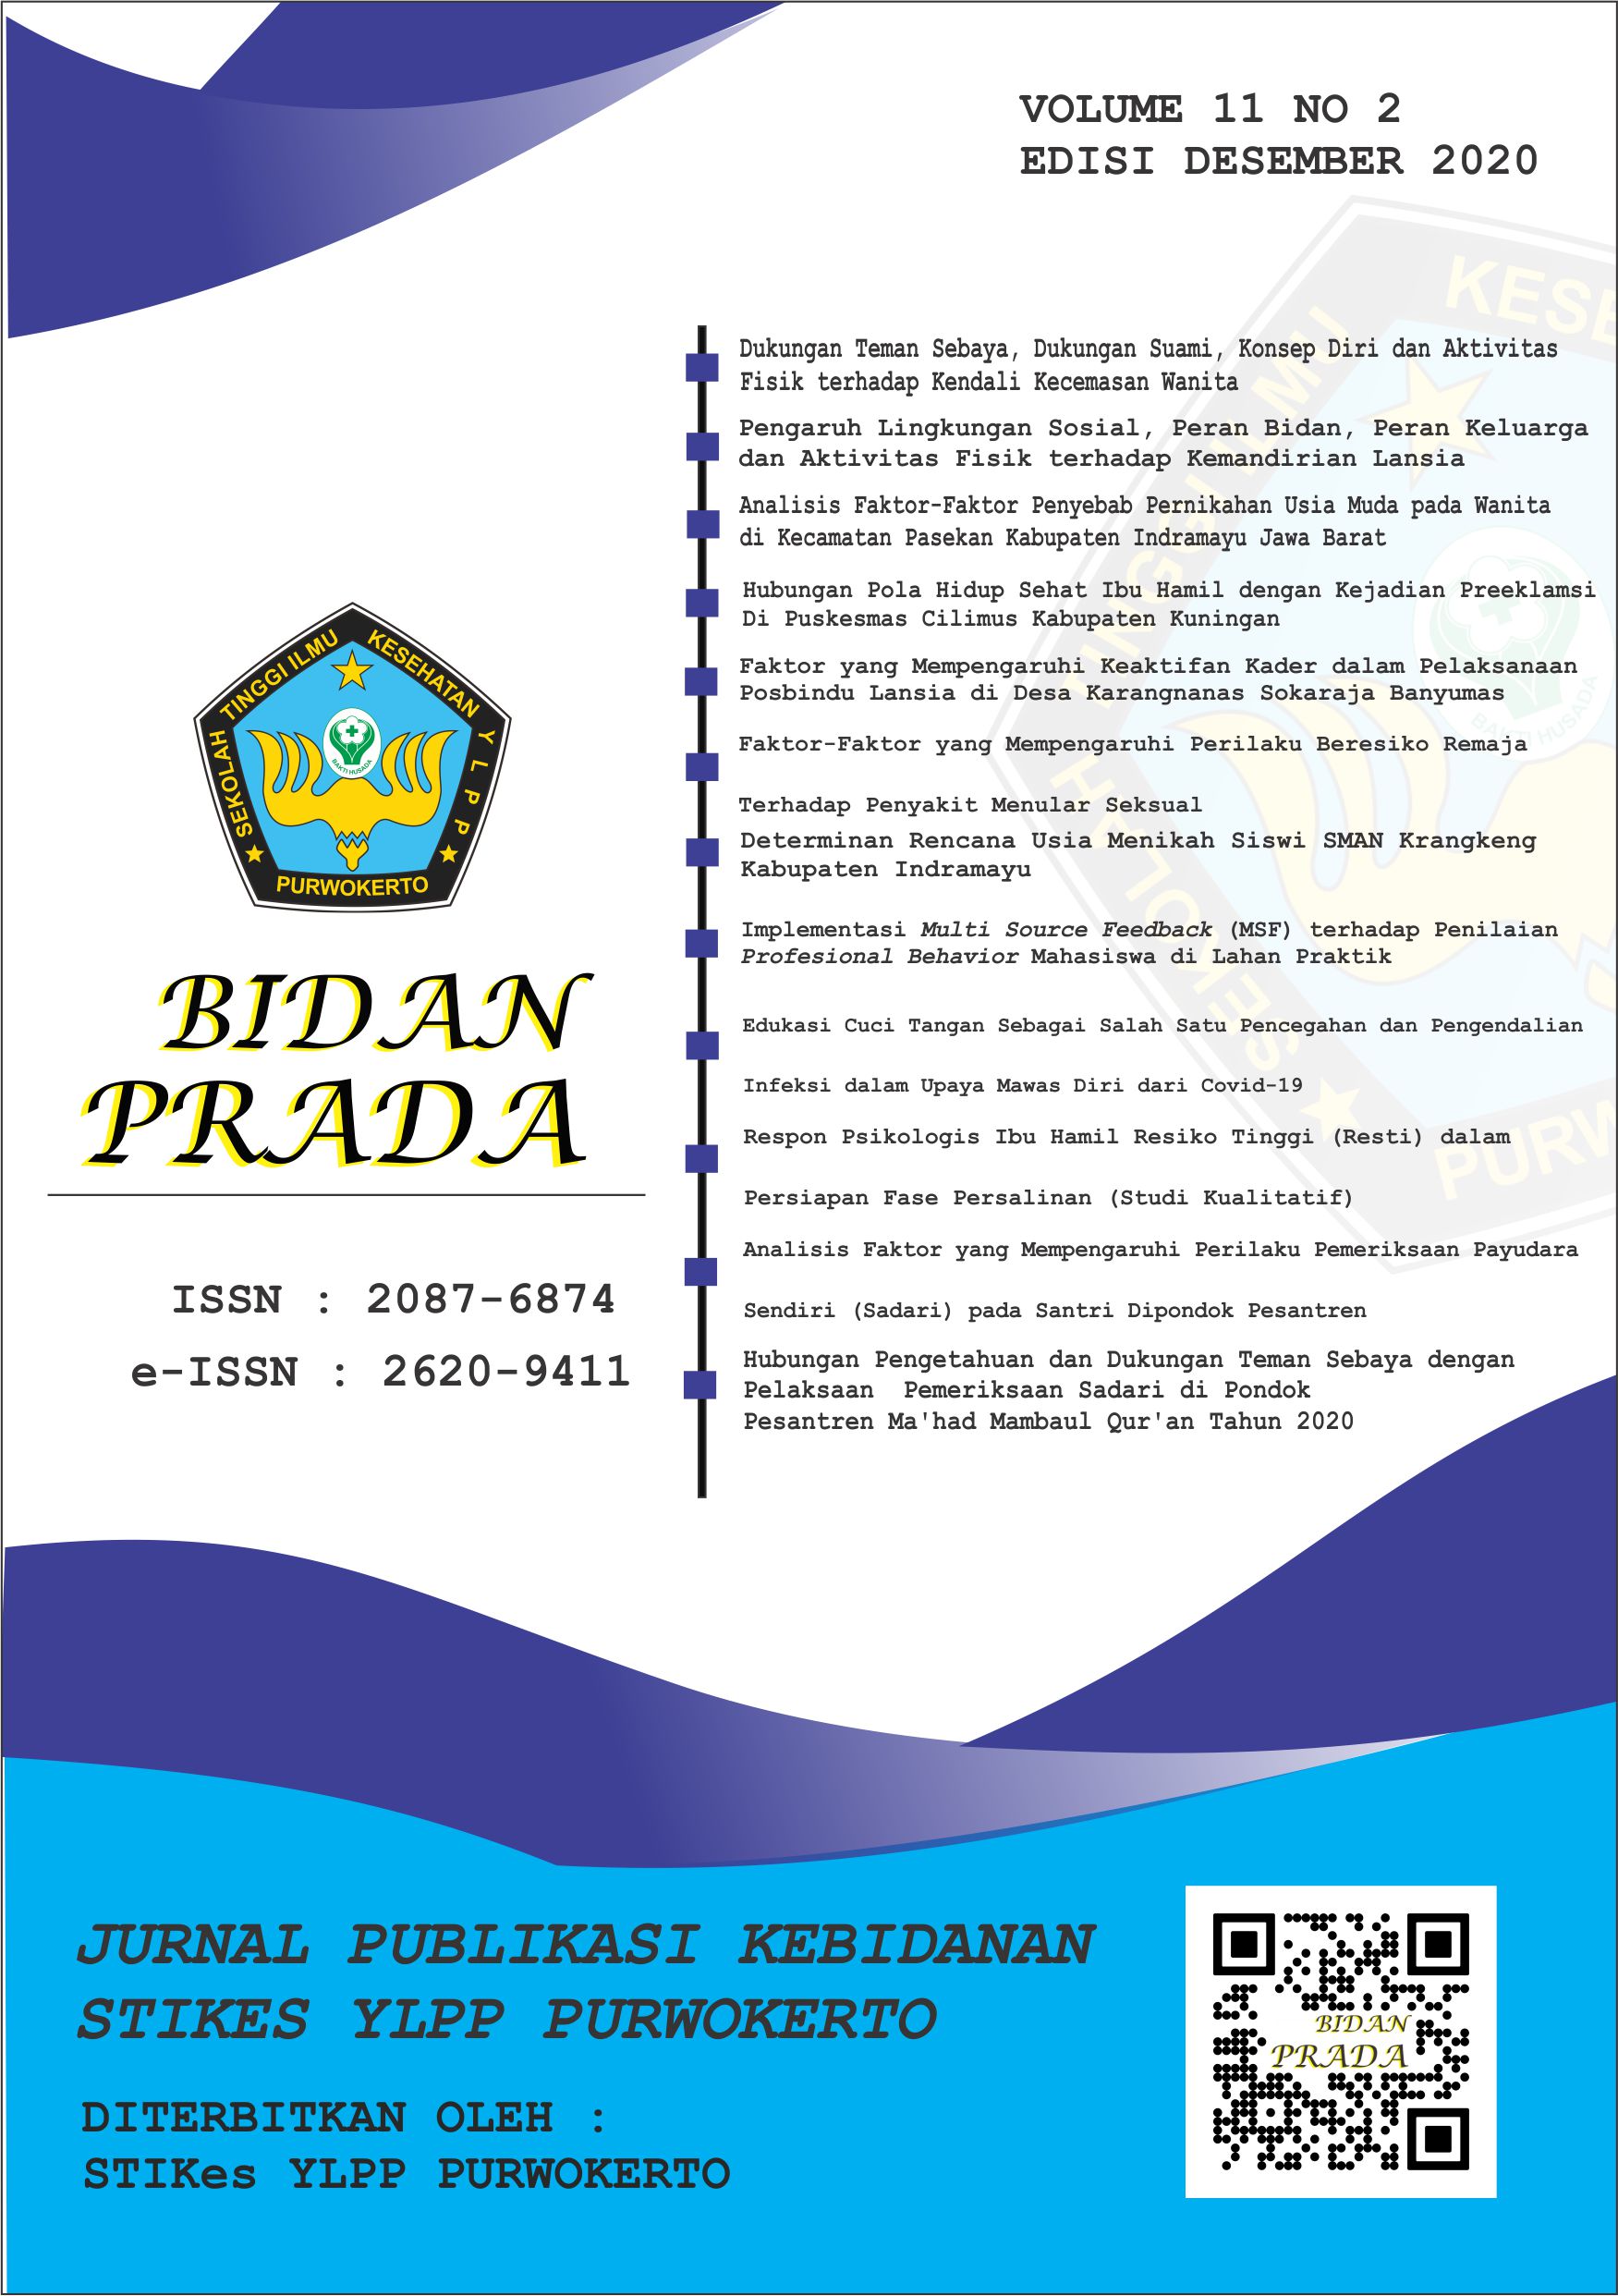 					View Vol. 11 No. 2 (2020): Jurnal Bidan Prada Edisi desember 2020
				